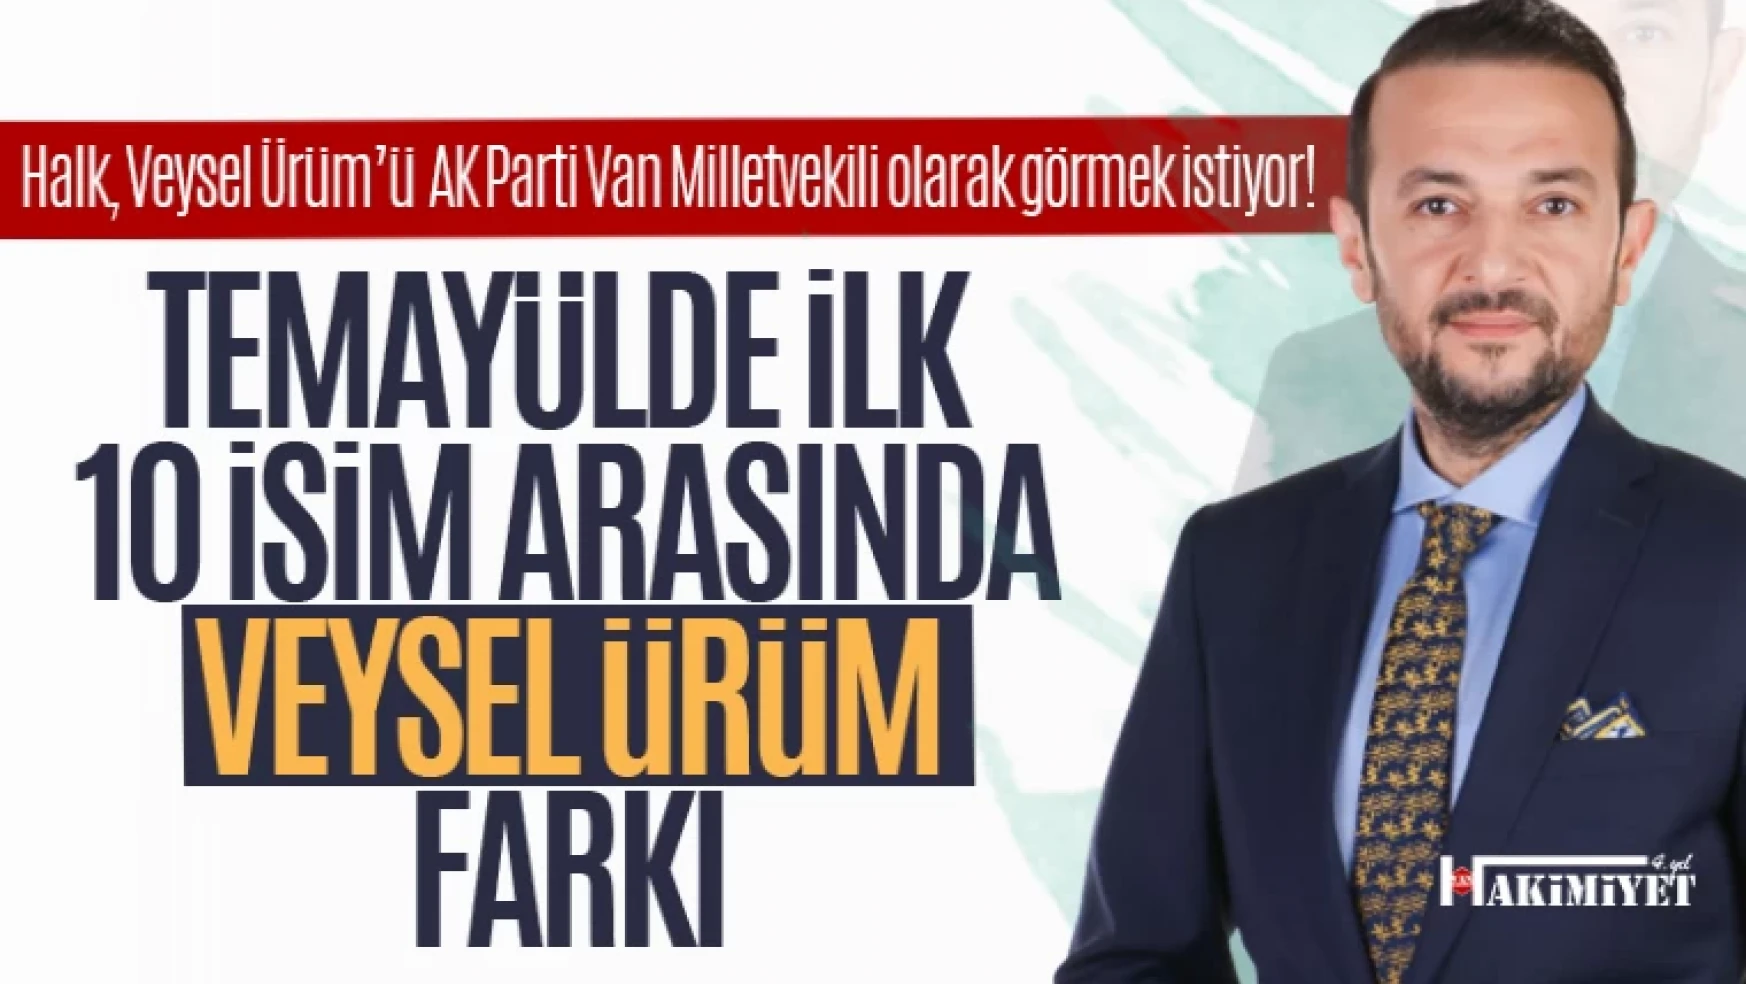 AK Parti Van Milletvekili aday adayı Veysel Ürüm'ün temayül farkı!